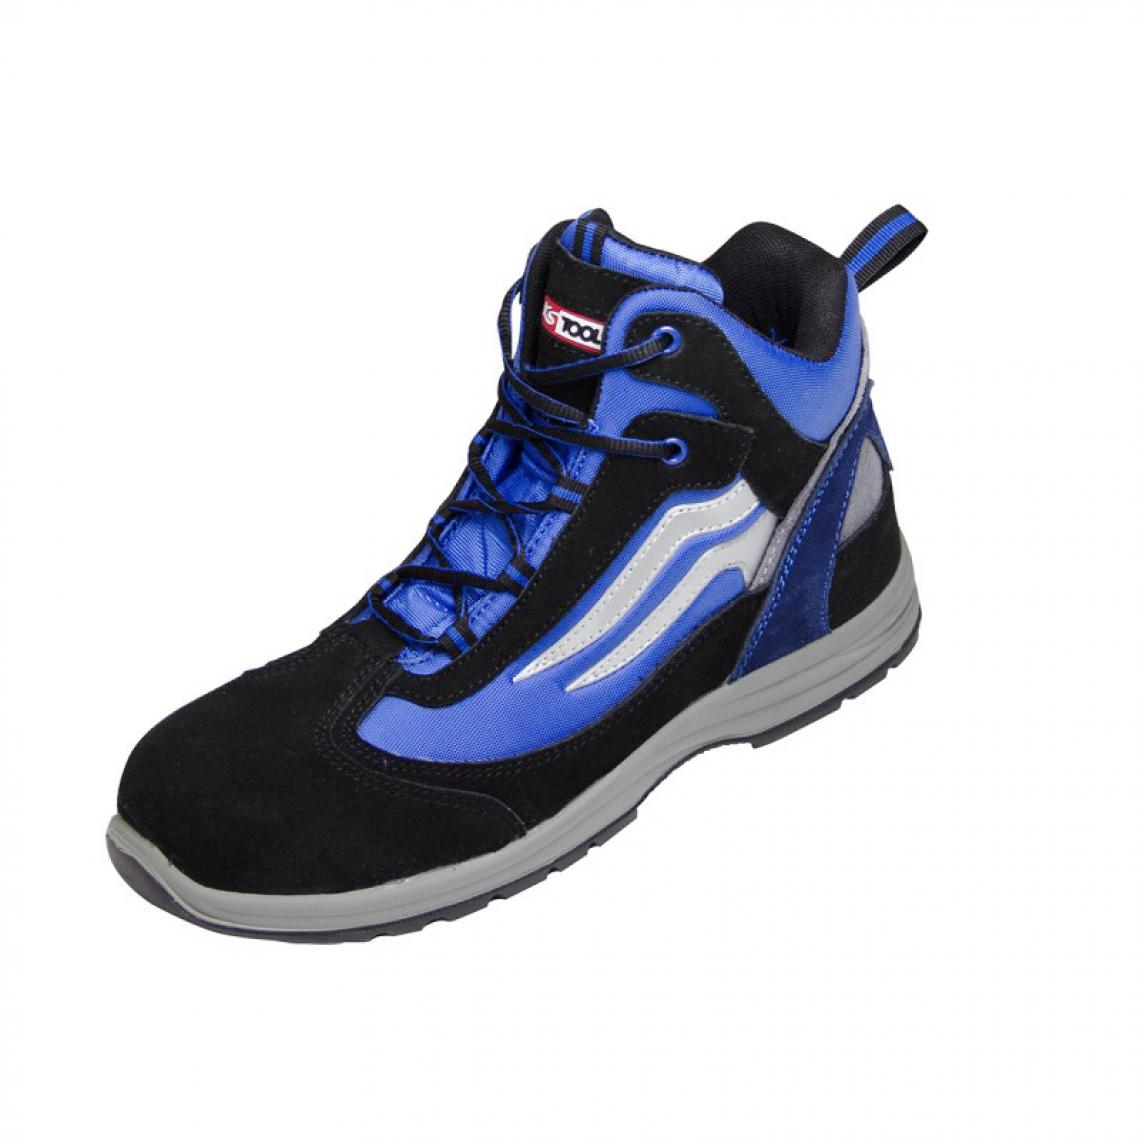 Kstools - Chaussures de sécurité montante KSTOOLS Couleur bleue et noire taille 39 - Equipement de Protection Individuelle